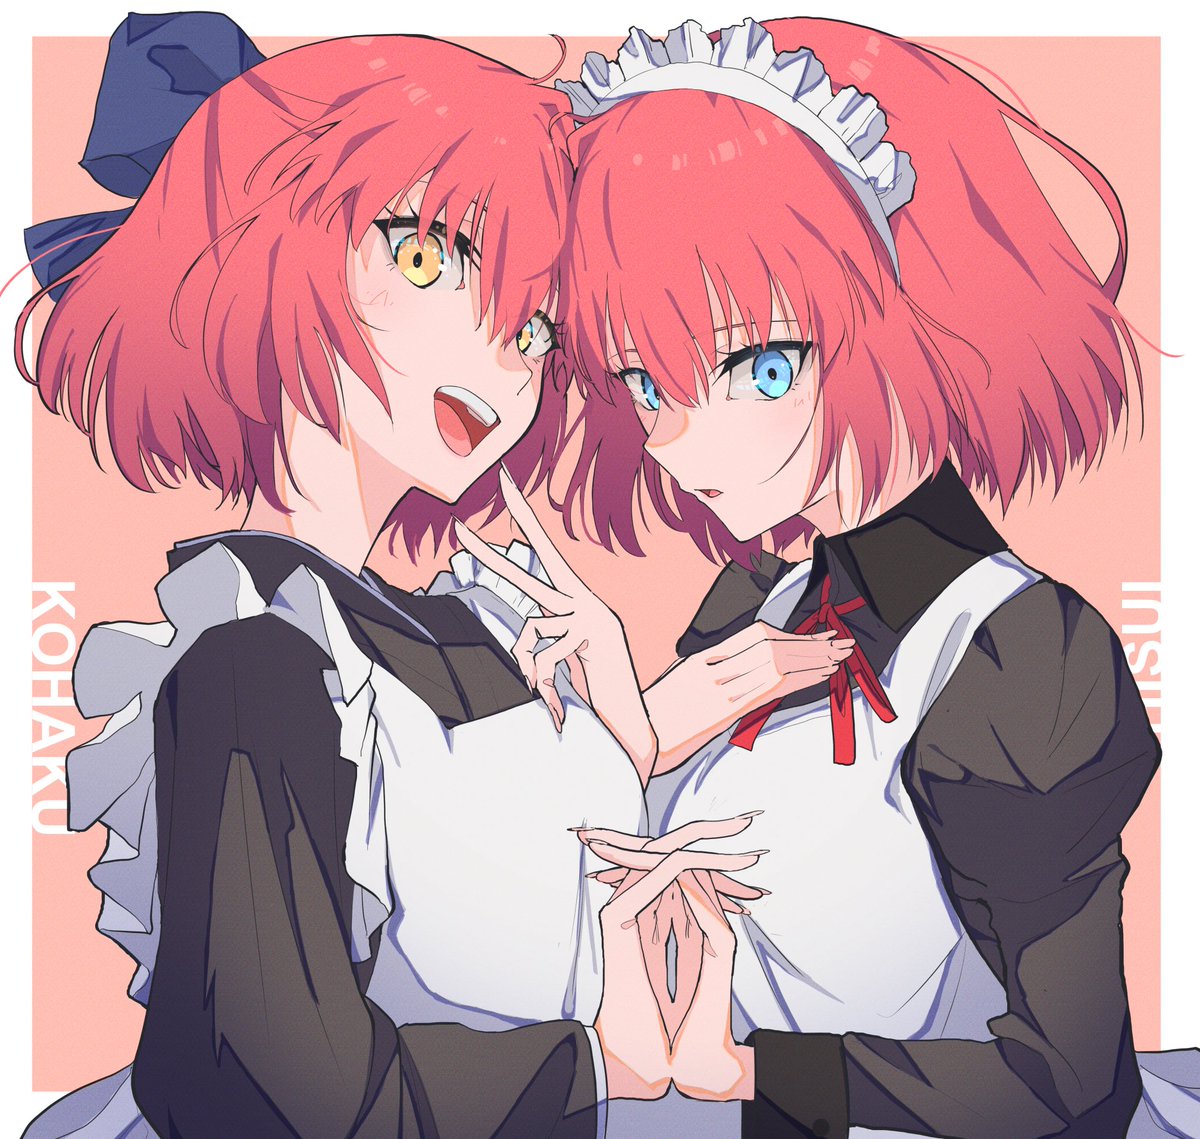 hisui (tsukihime) ,kohaku (tsukihime) multiple girls 2girls apron wa maid maid headdress twins maid apron  illustration images